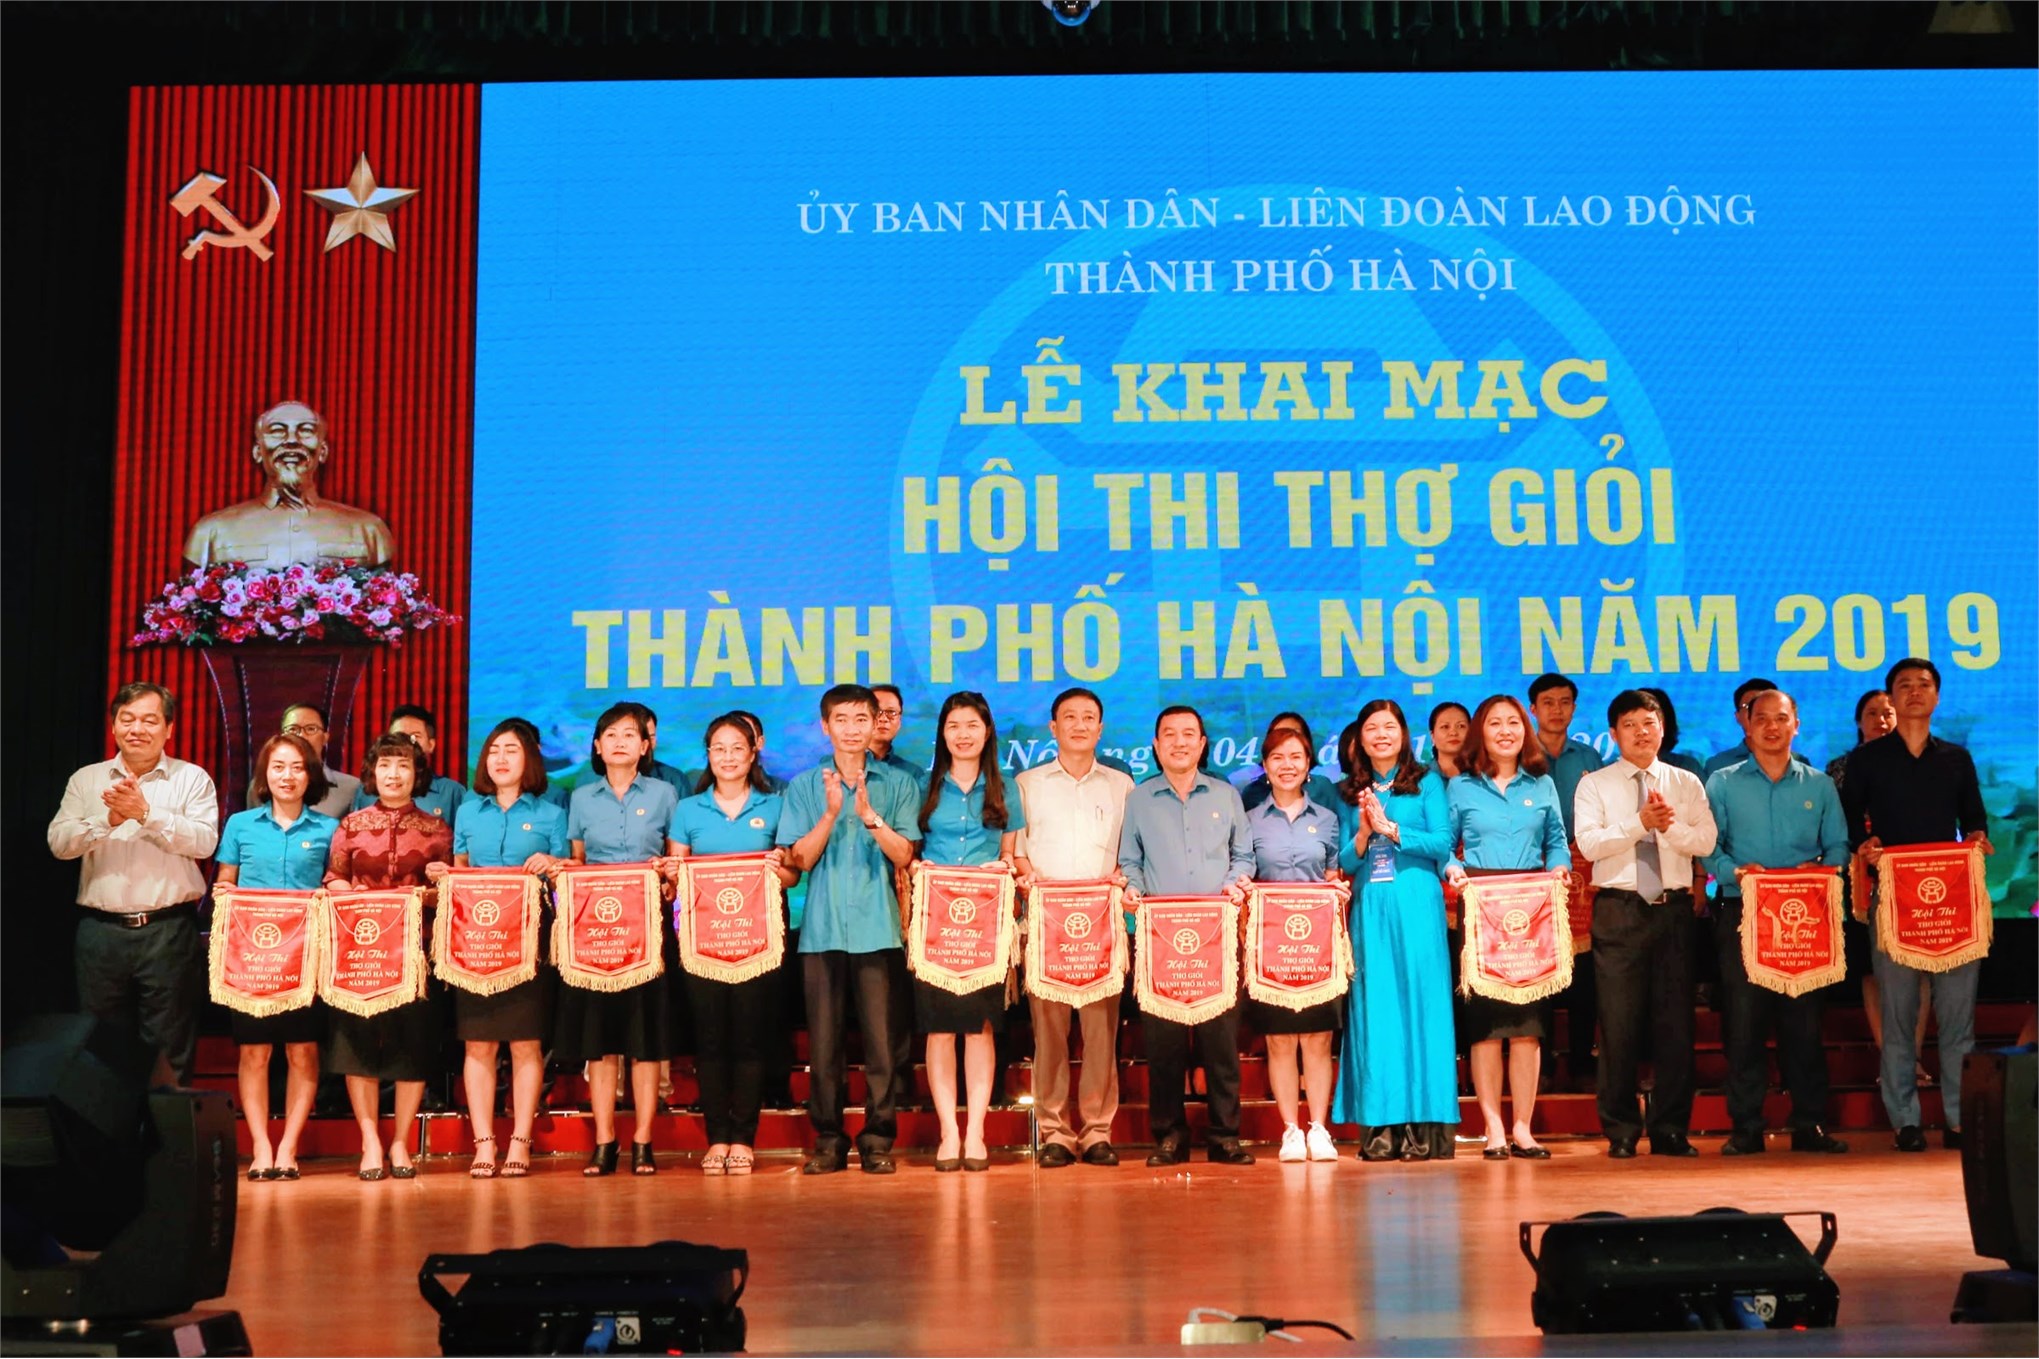 Hội thi thợ giỏi Thành phố Hà Nội (03/10 - 05/10)